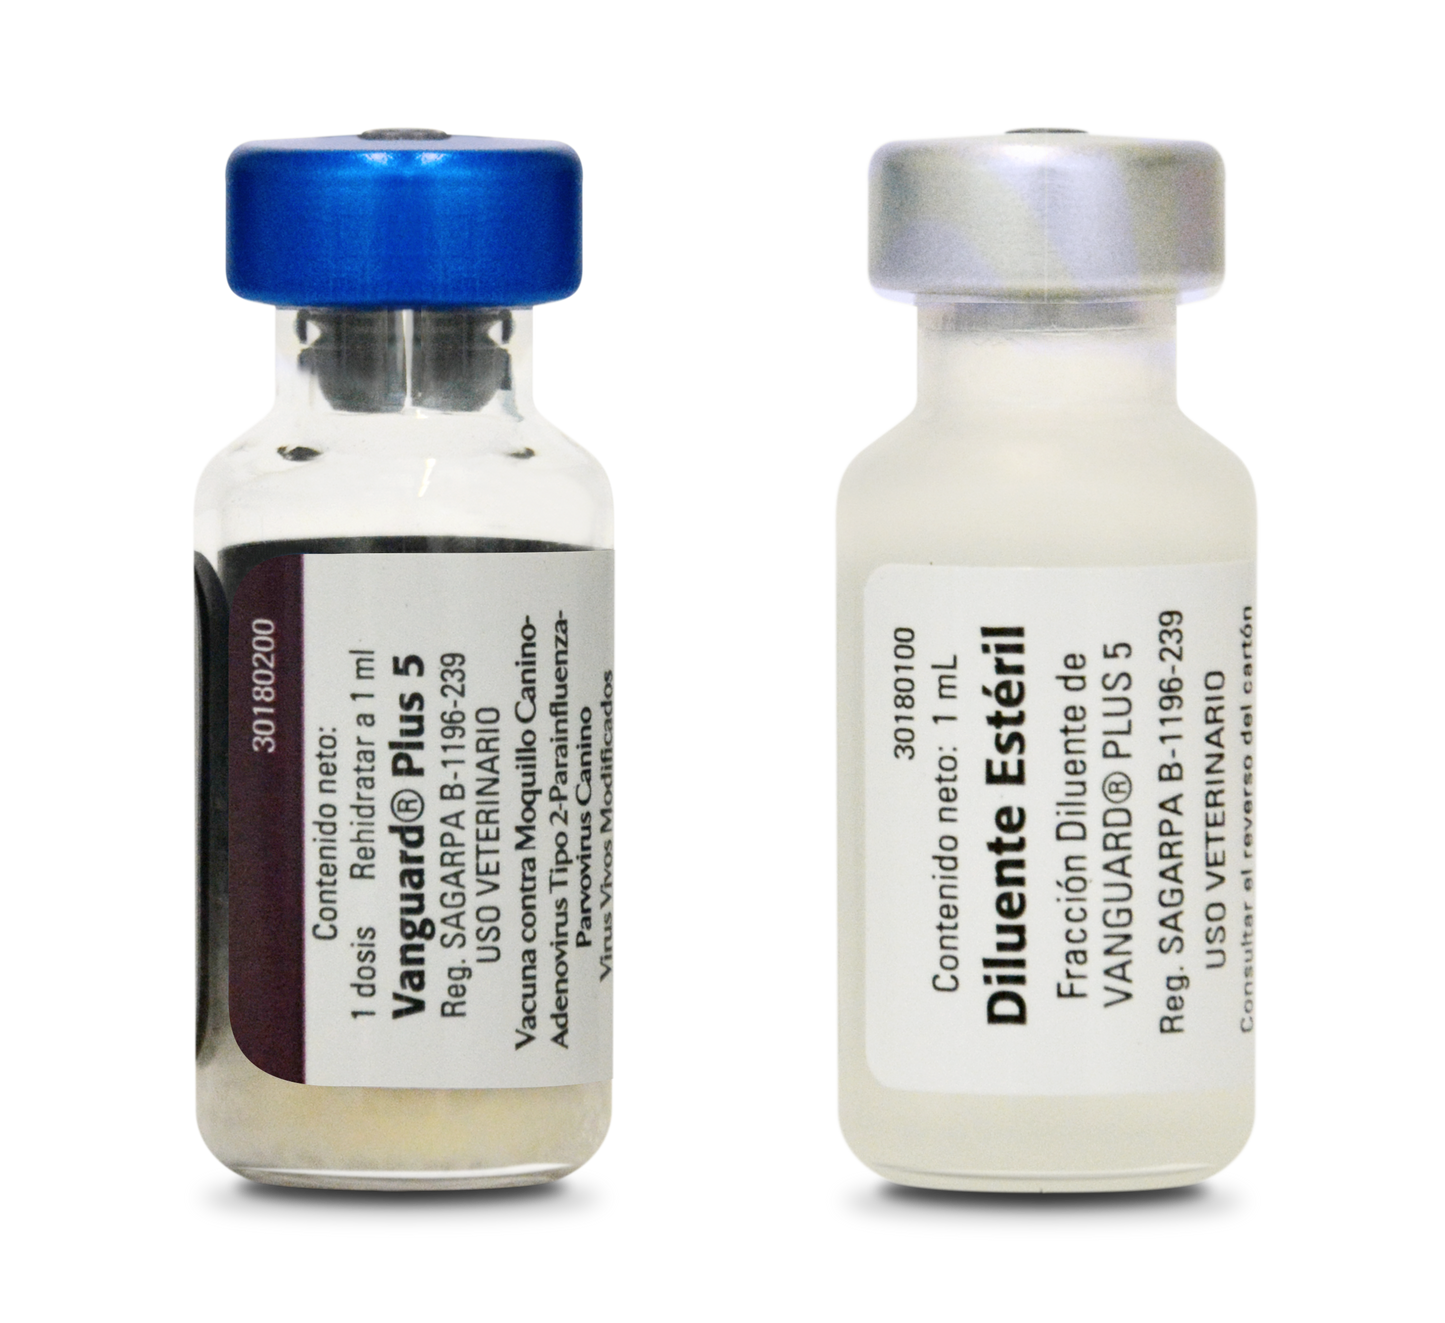 Vacuna Vanguard Plus 5 | Moquillo, Parainfluenza, Parvovirus